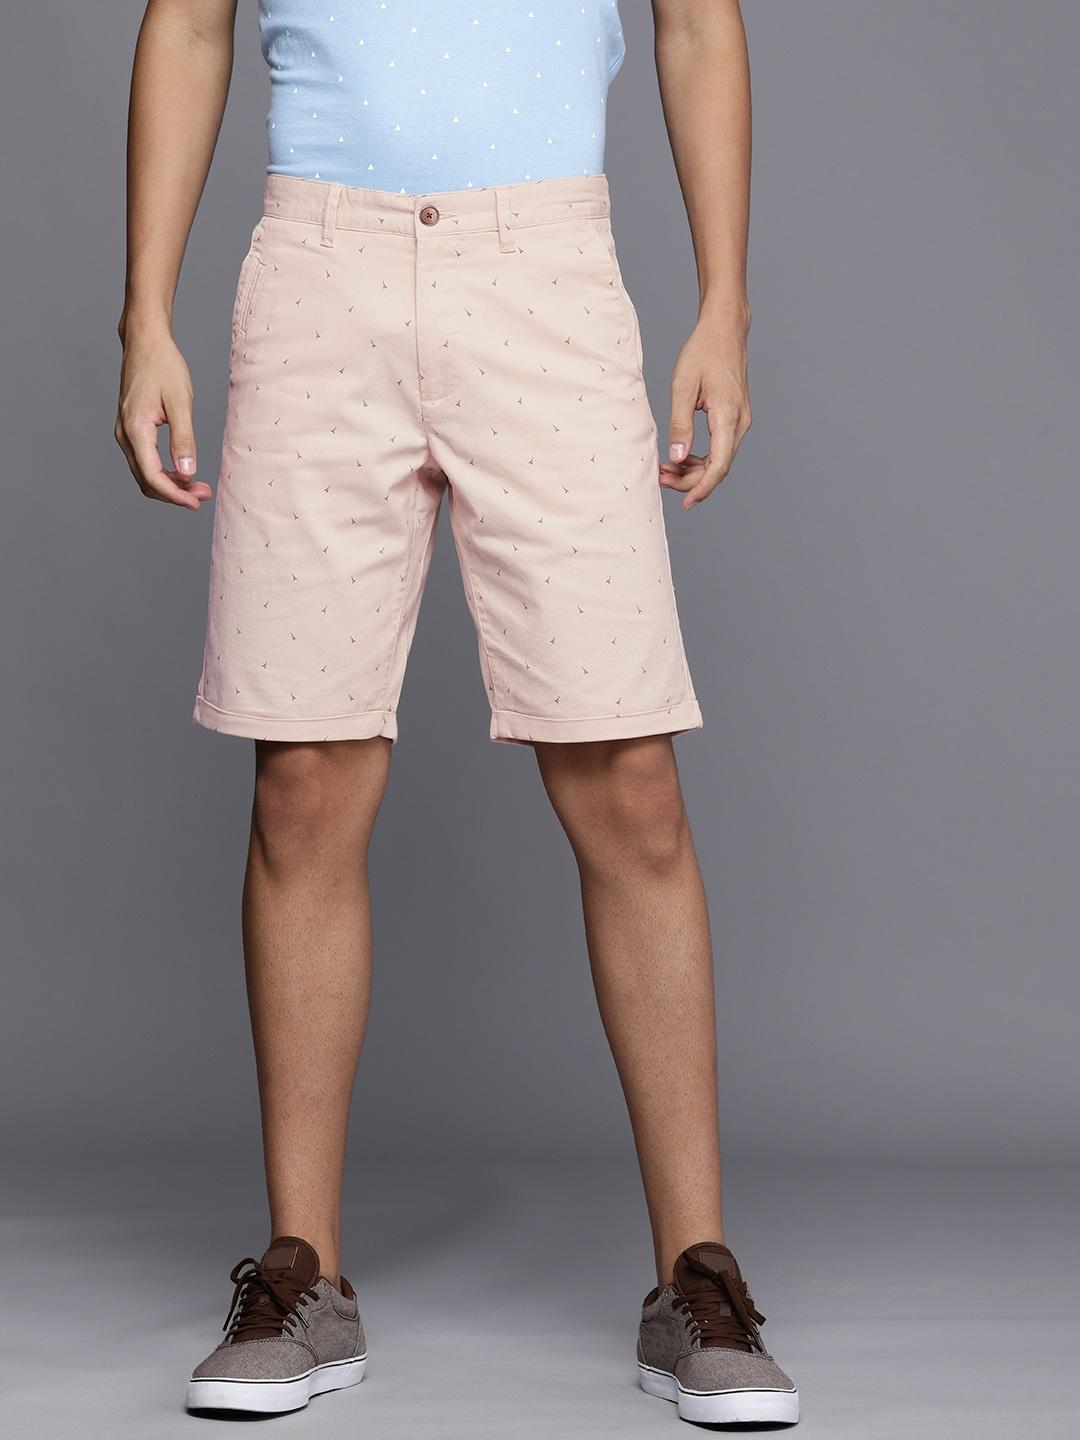 louis philippe sport men beige & brown printed slim fit shorts